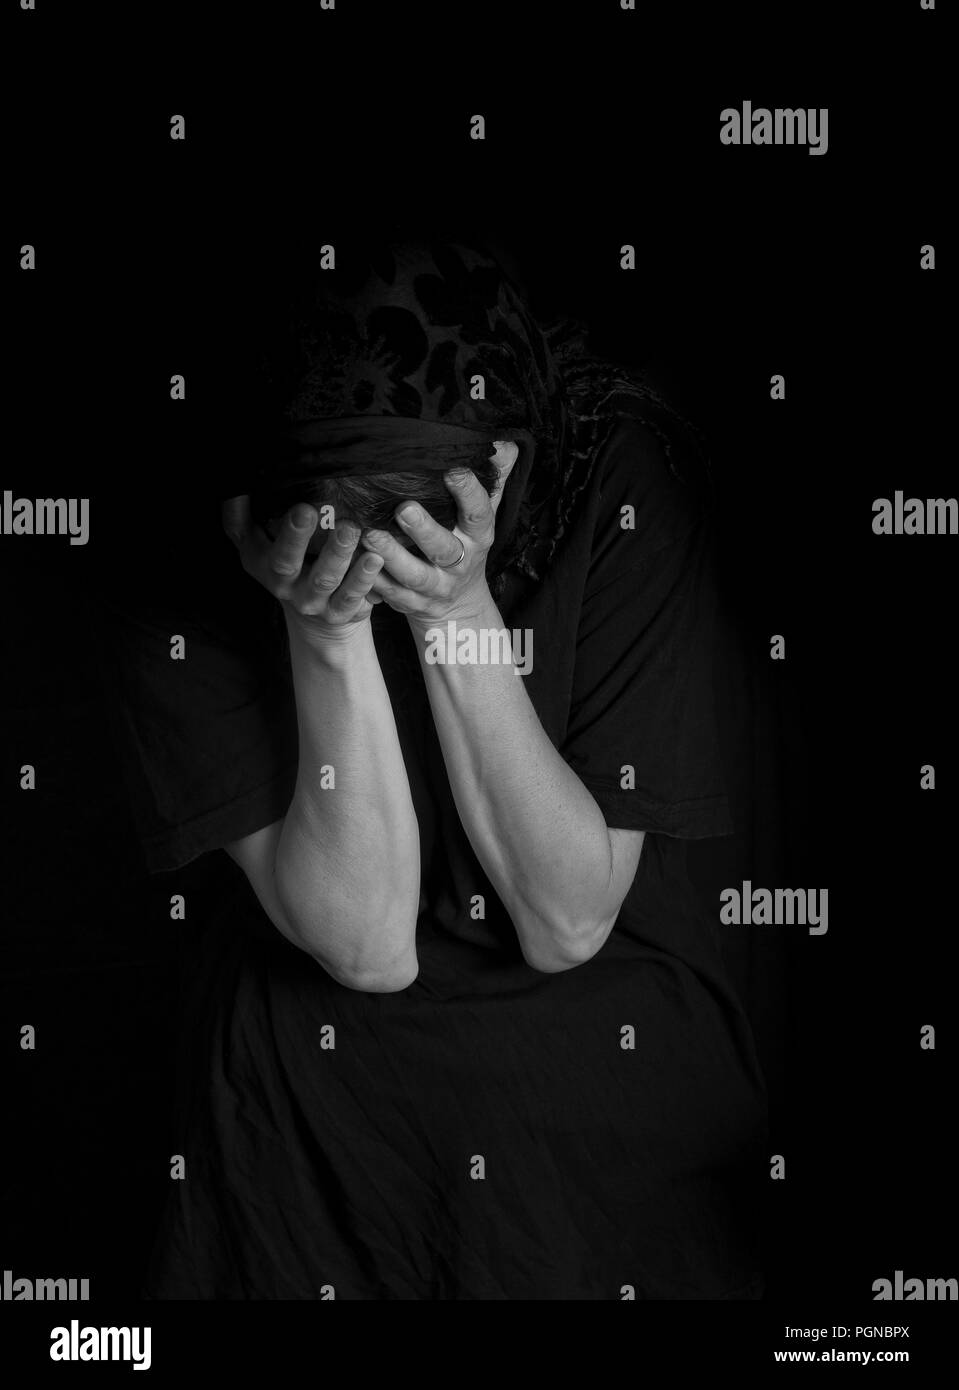 Femme assise avec ses mains couvrant son visage - Notion de tristesse (image monochrome) Banque D'Images